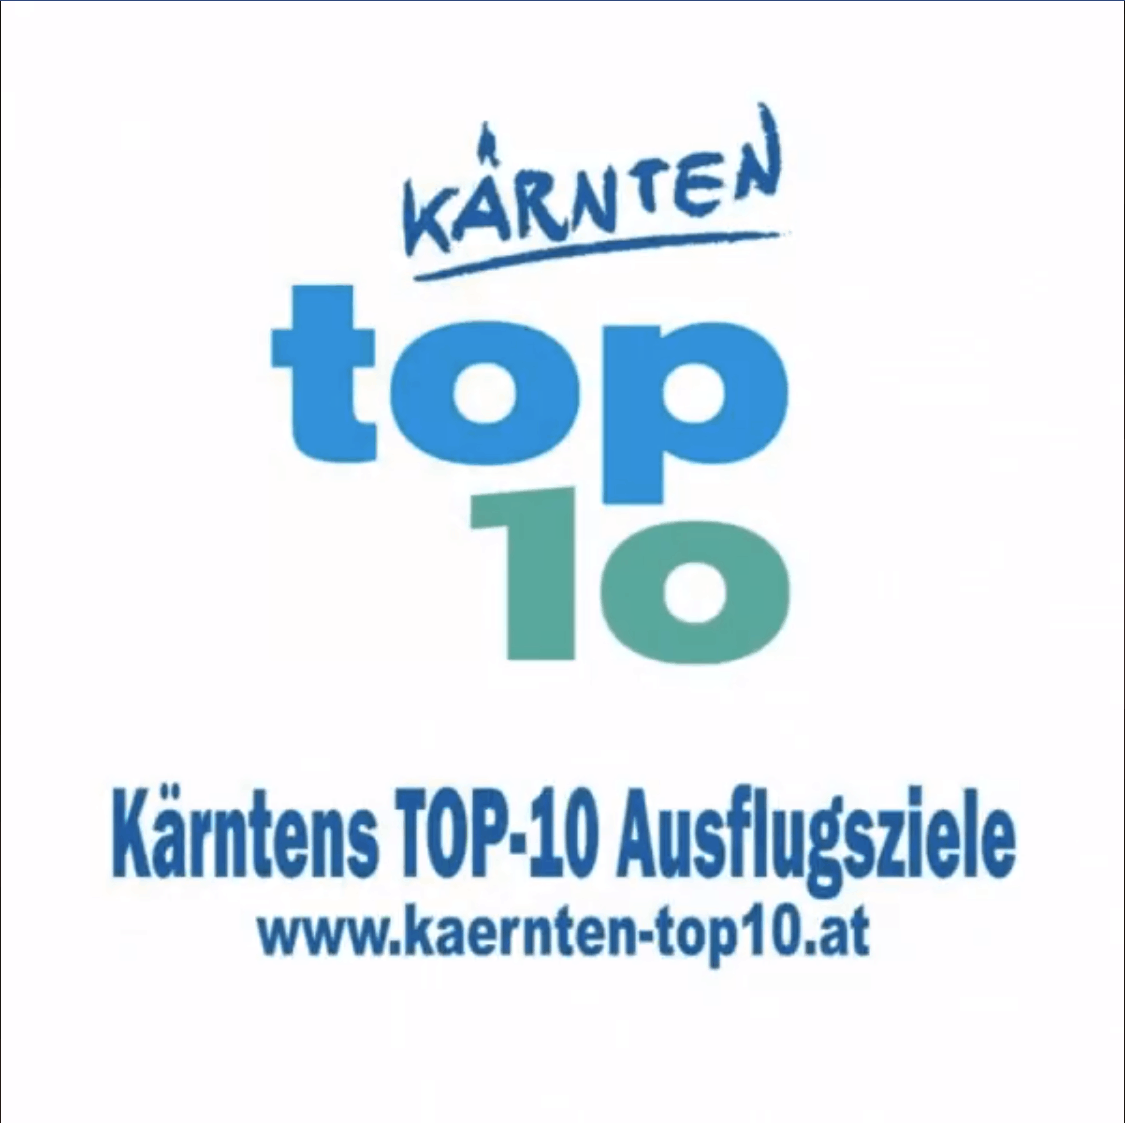 Ausflüge für Familien, Kinder, Senioren, Paare uvm. - Kärntens TOP-10 Ausflugsziele - Bild mit Logo und Web